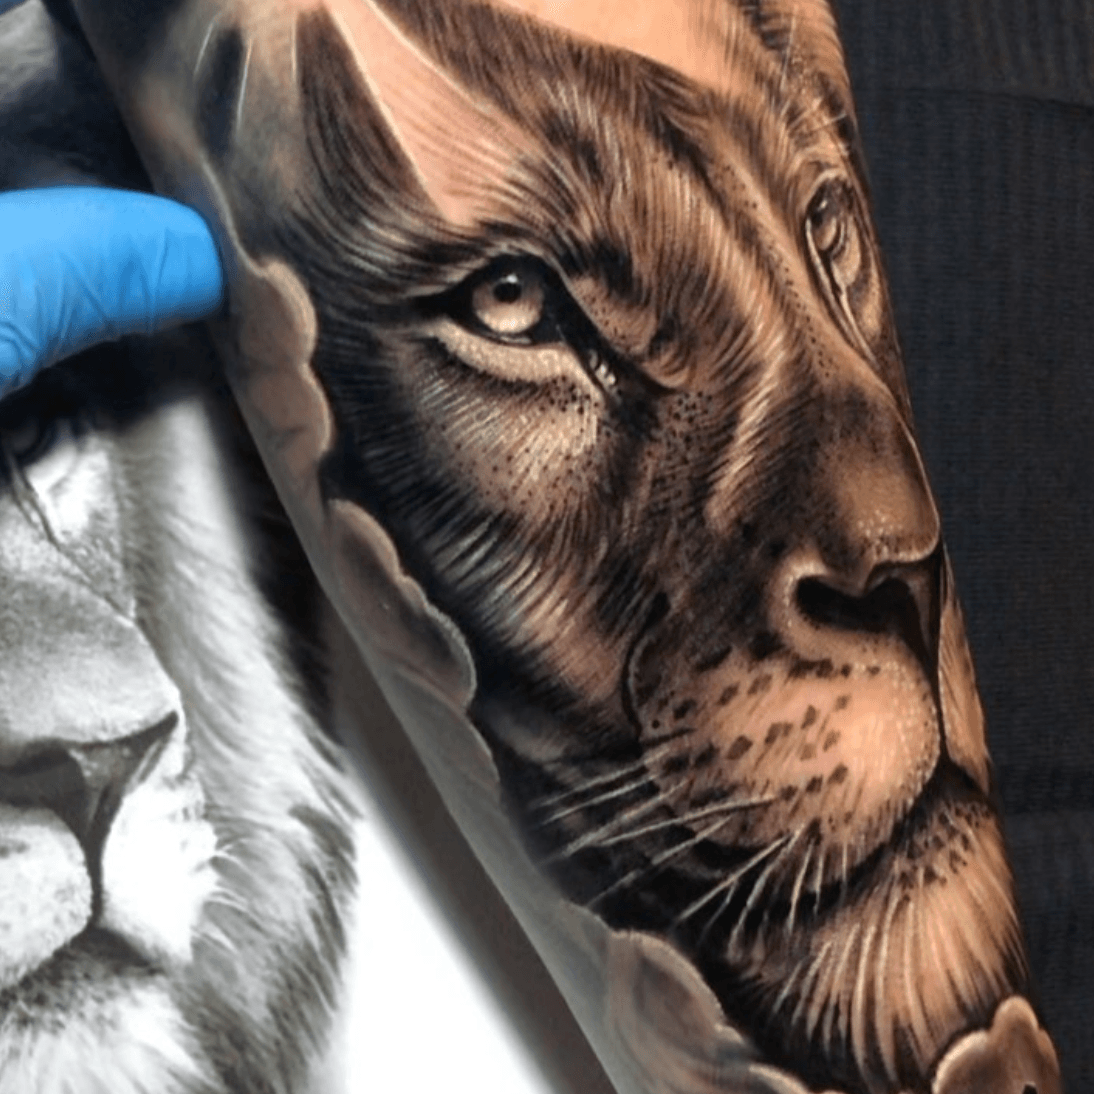 Tattoo Guy on Tumblr: Snarling Lion's Head Tattoo in progress! #LionTattoo # Lion #RealisticTattoo #Realism #Roar #WorkinProgress #FollowMe #TattooGuy...